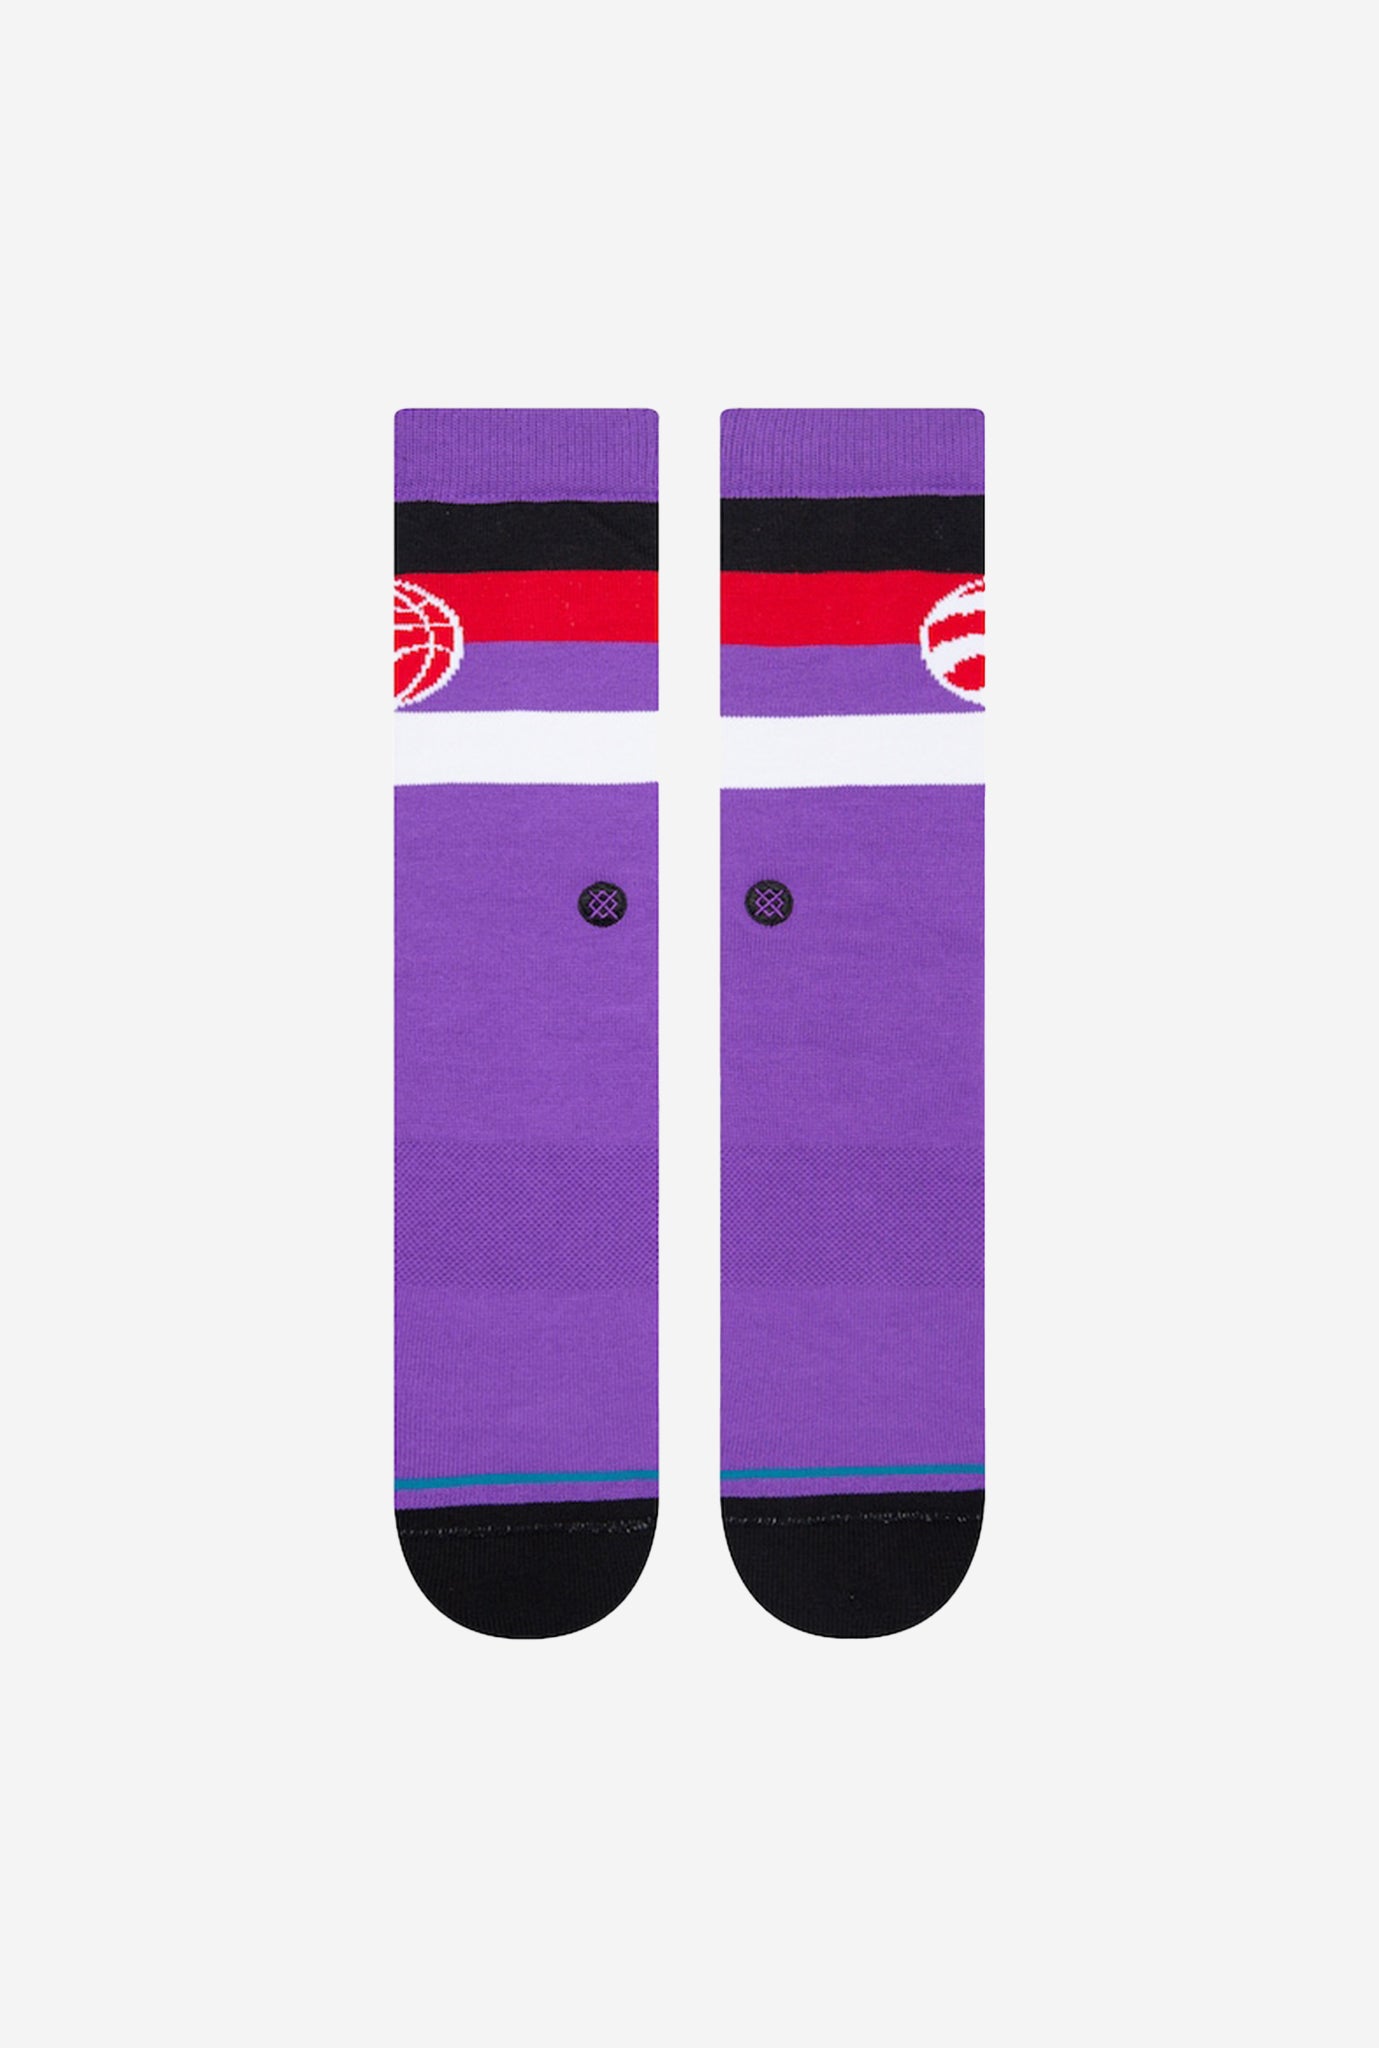 Toronto Raptors Stripe Crew Socks - Red/Purple